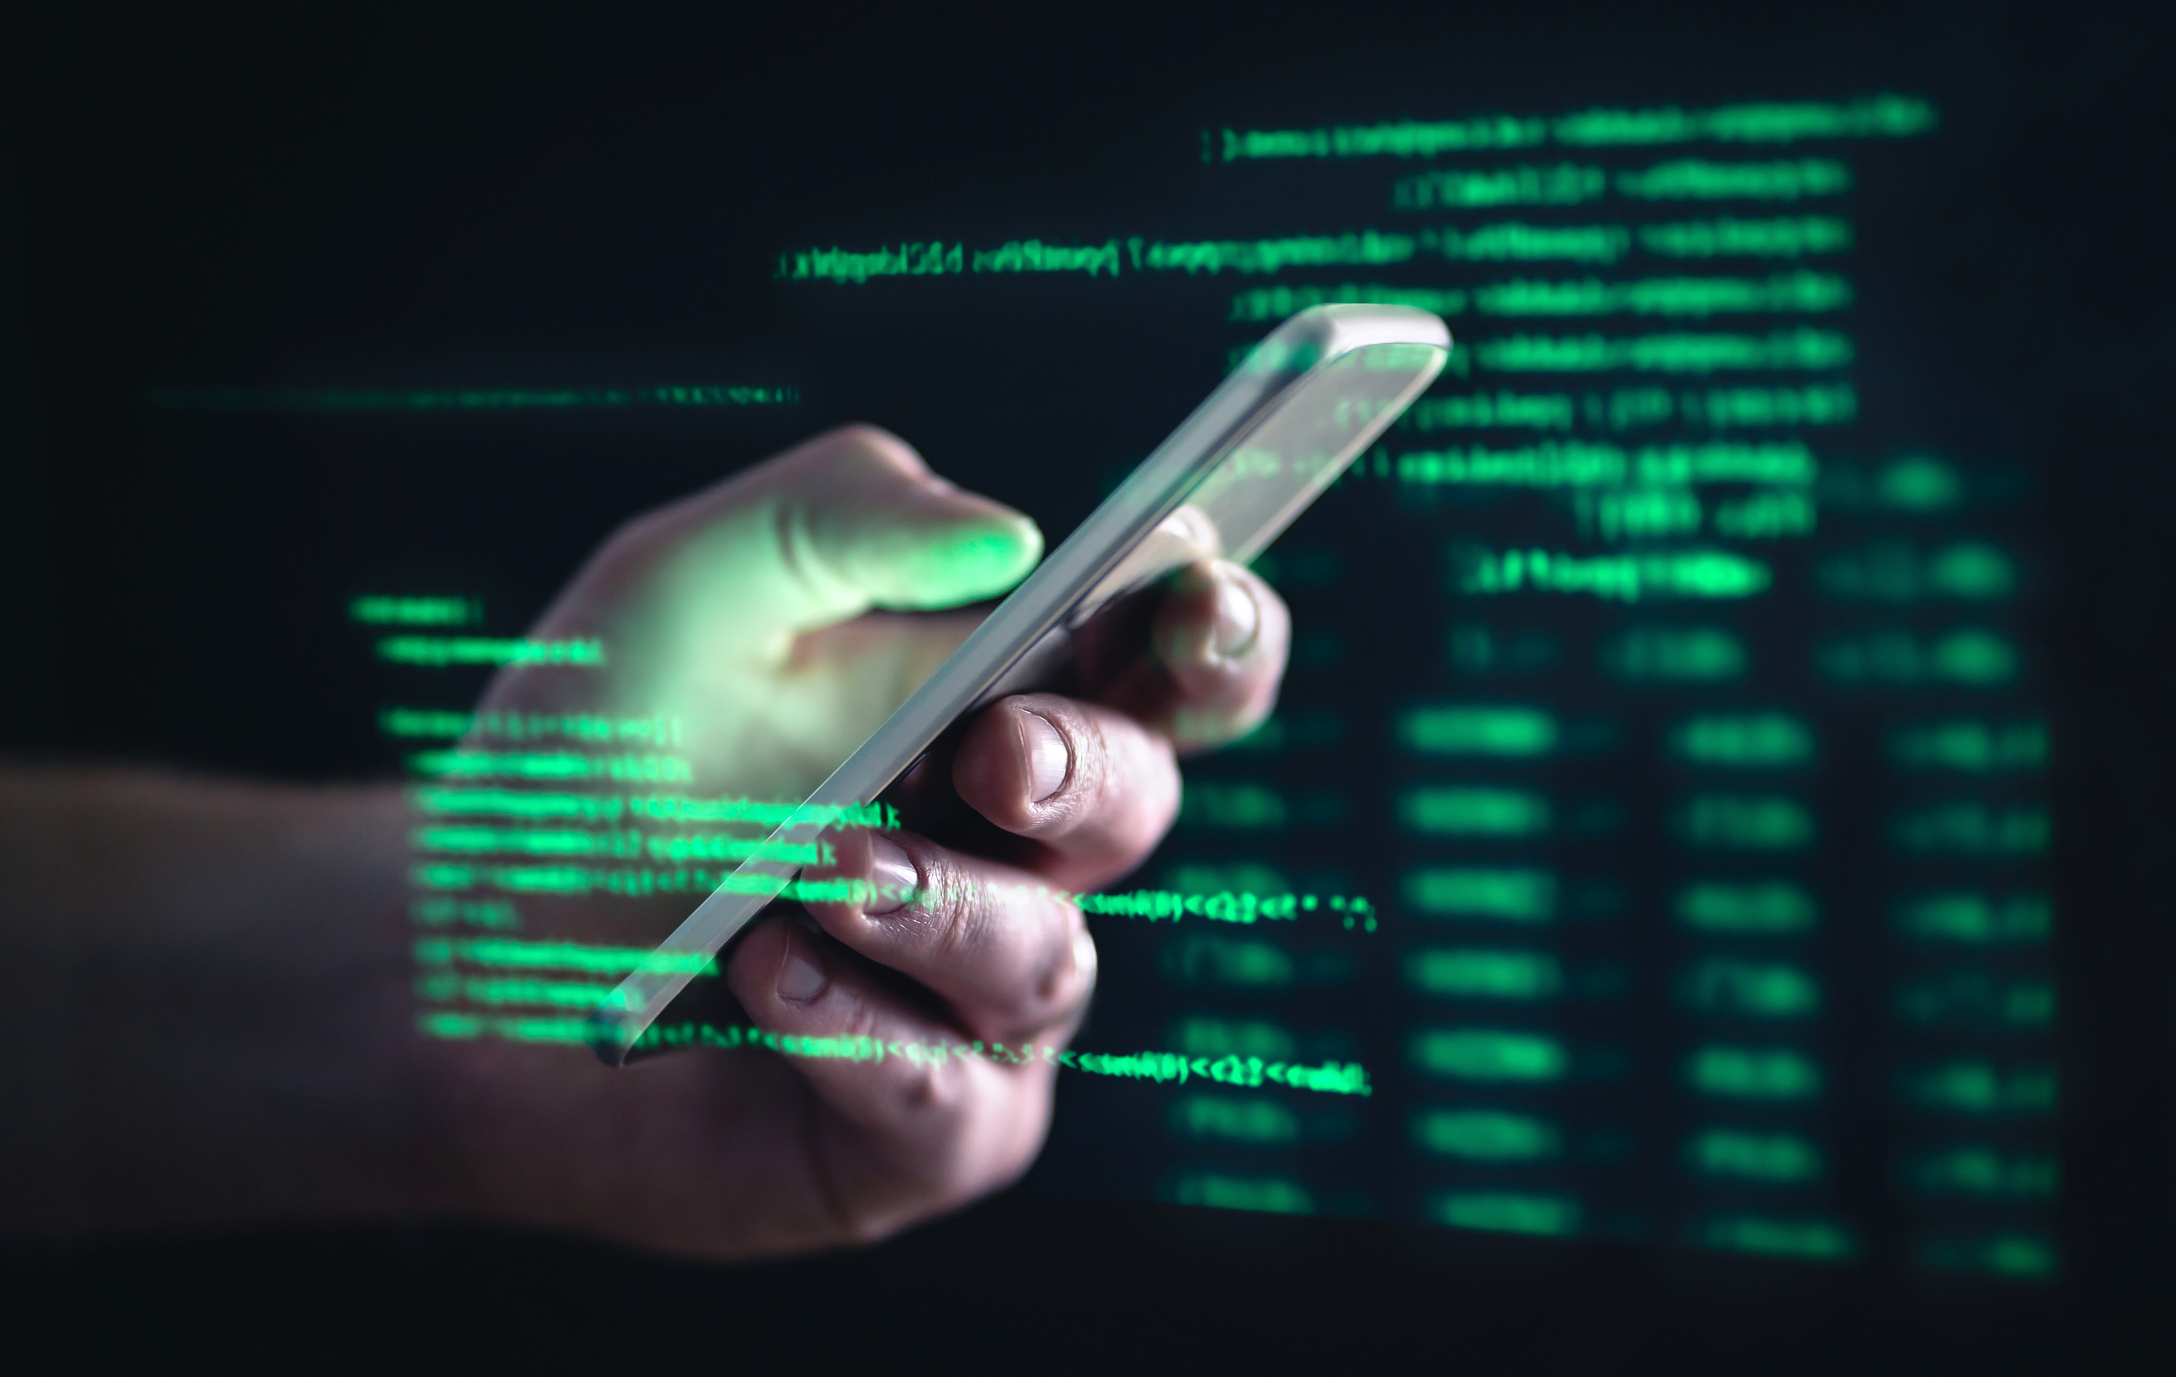 مفهوم Darkweb و darknet والقرصنة.  يد تمسك هاتفًا خلويًا مضافًا إليه نص أخضر على شاشة الكمبيوتر.